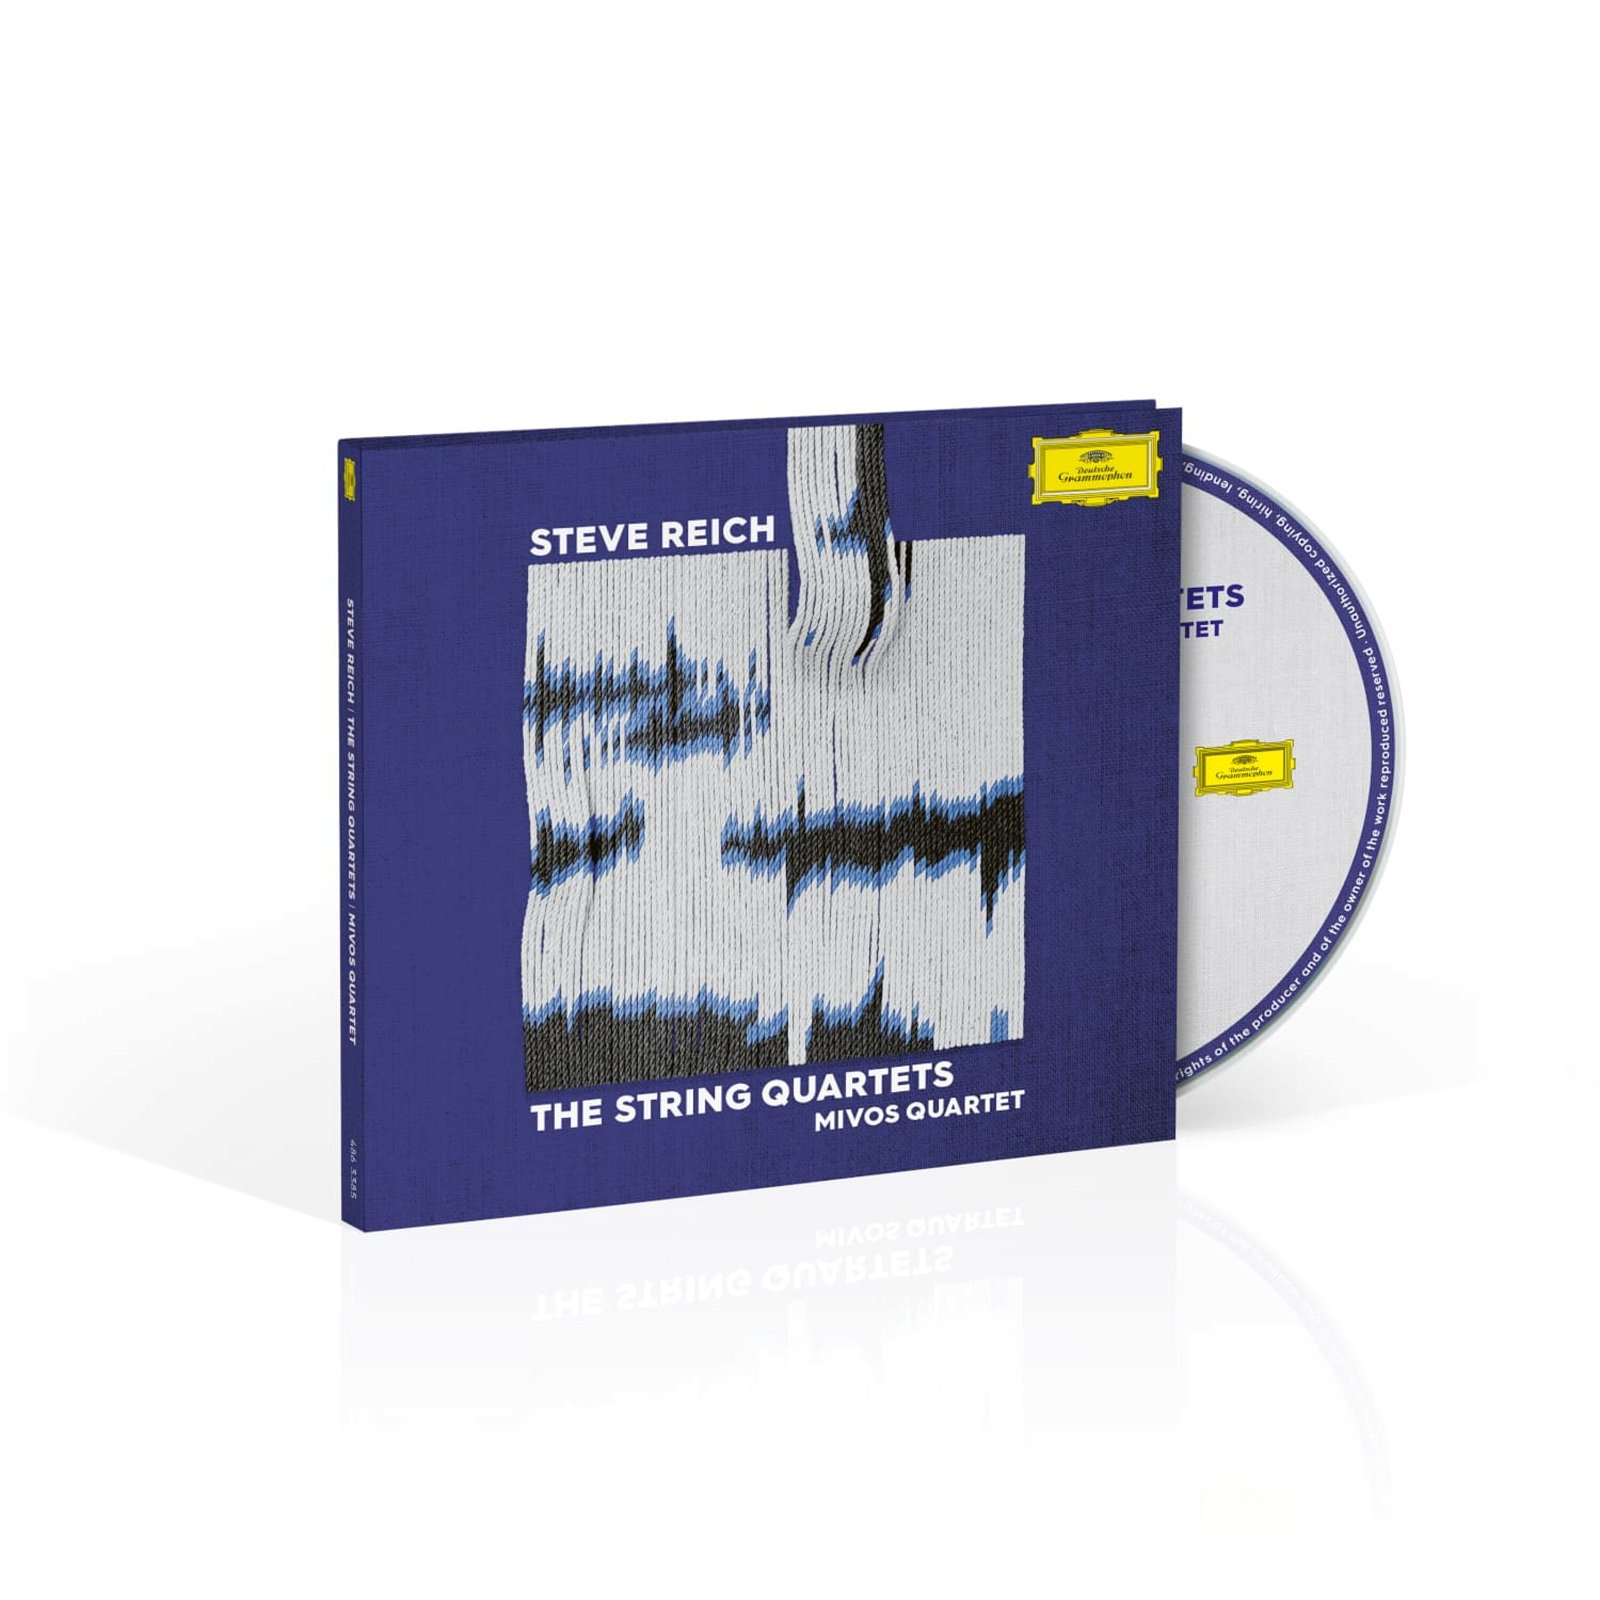 CD Shop - MIVOS QUARTET STEVE REICH: THE STRING QUARTETS